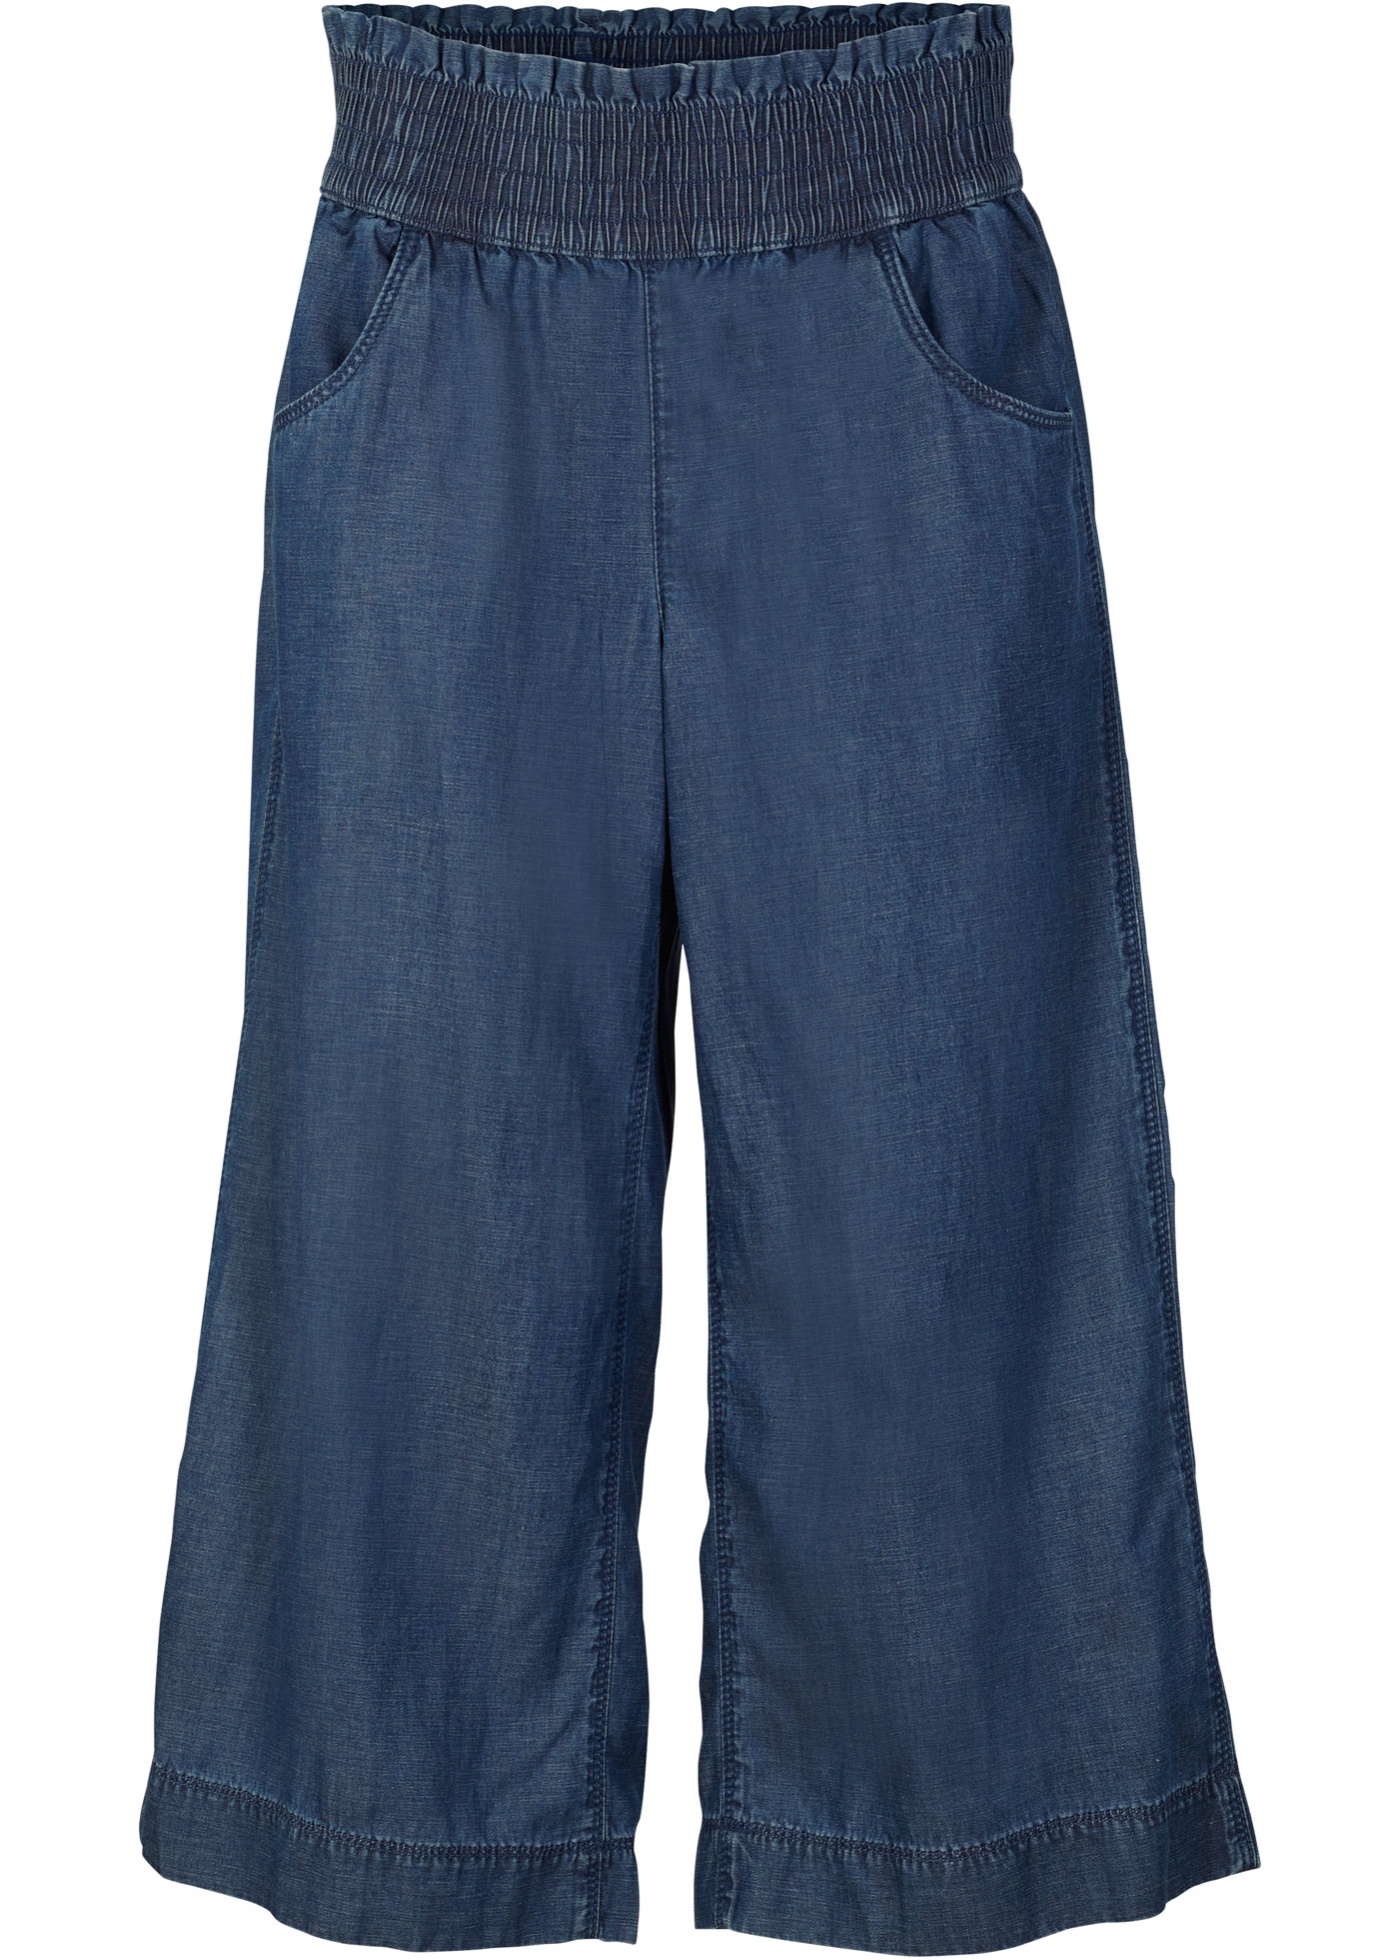 Pantaloni culotte larghi con TENCEL™ Lyocell e cinta comoda (Blu) - bpc bonprix collection